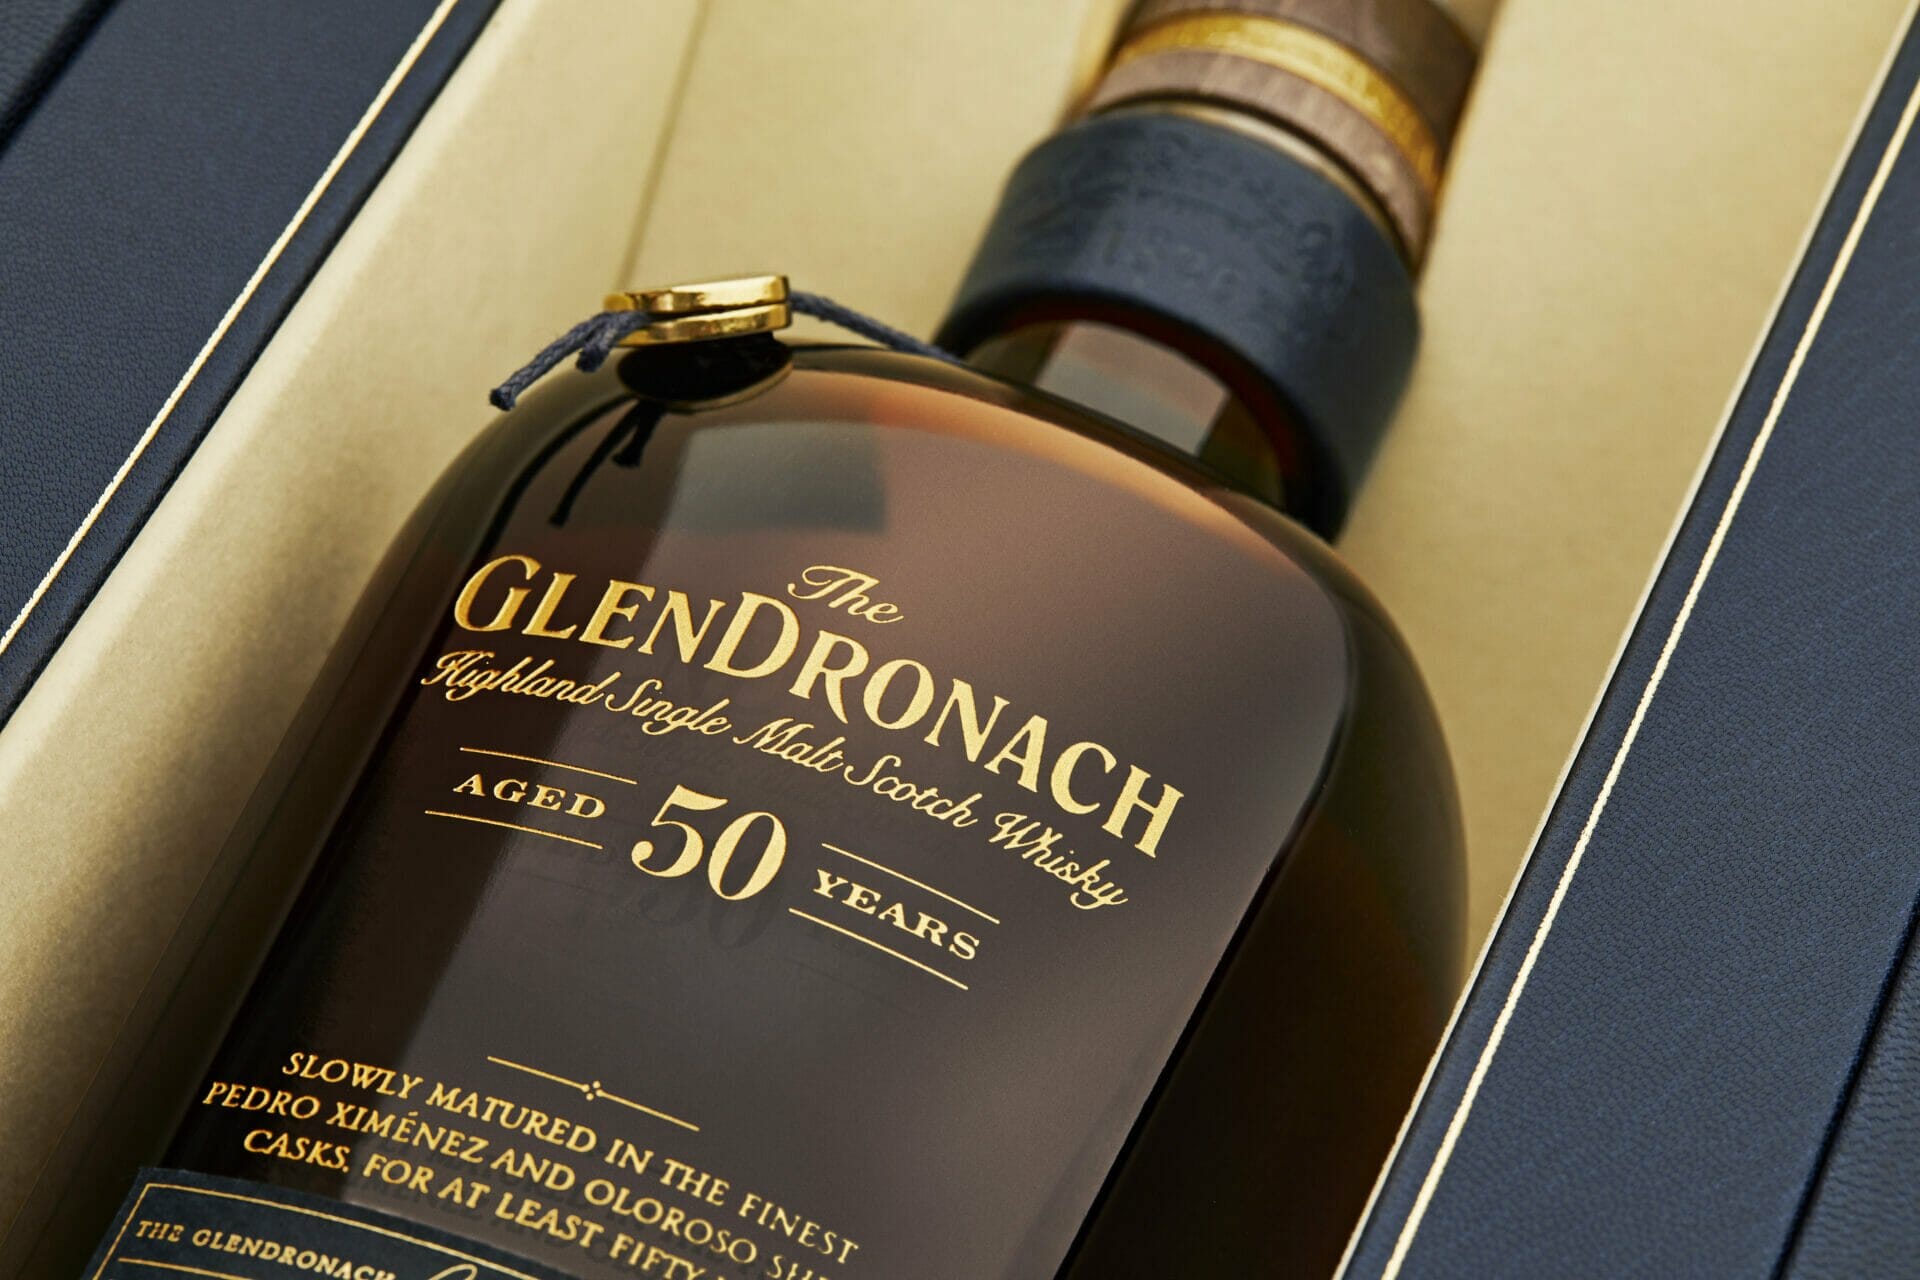 The GlenDronach komt met een spectaculaire 50 Years Old Single Malt